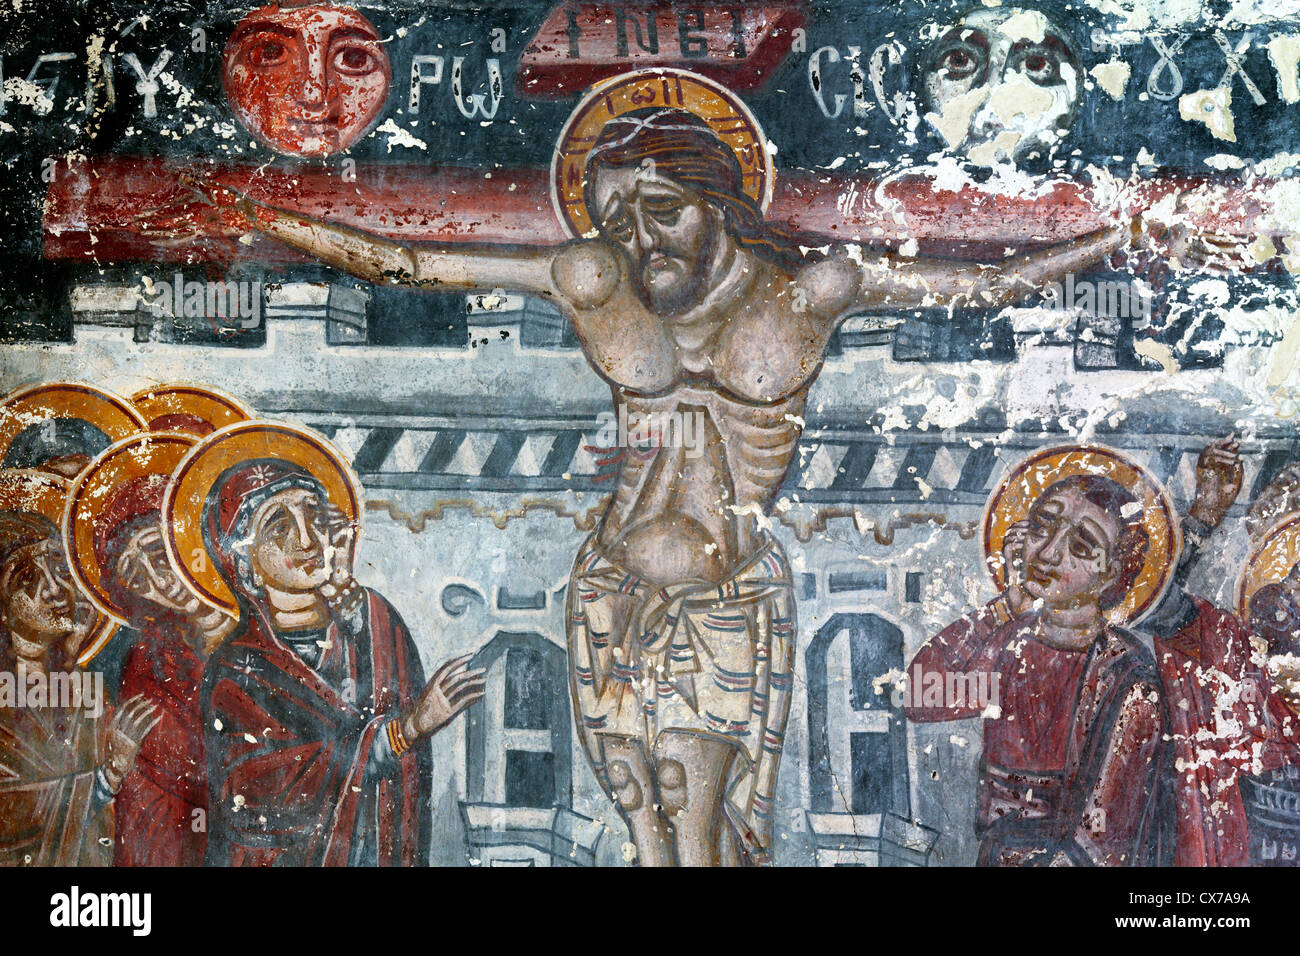 La peinture murale (14e siècle), Église de la Dormition, Khobi, Samegrelo-Zemo Svaneti, Géorgie Banque D'Images